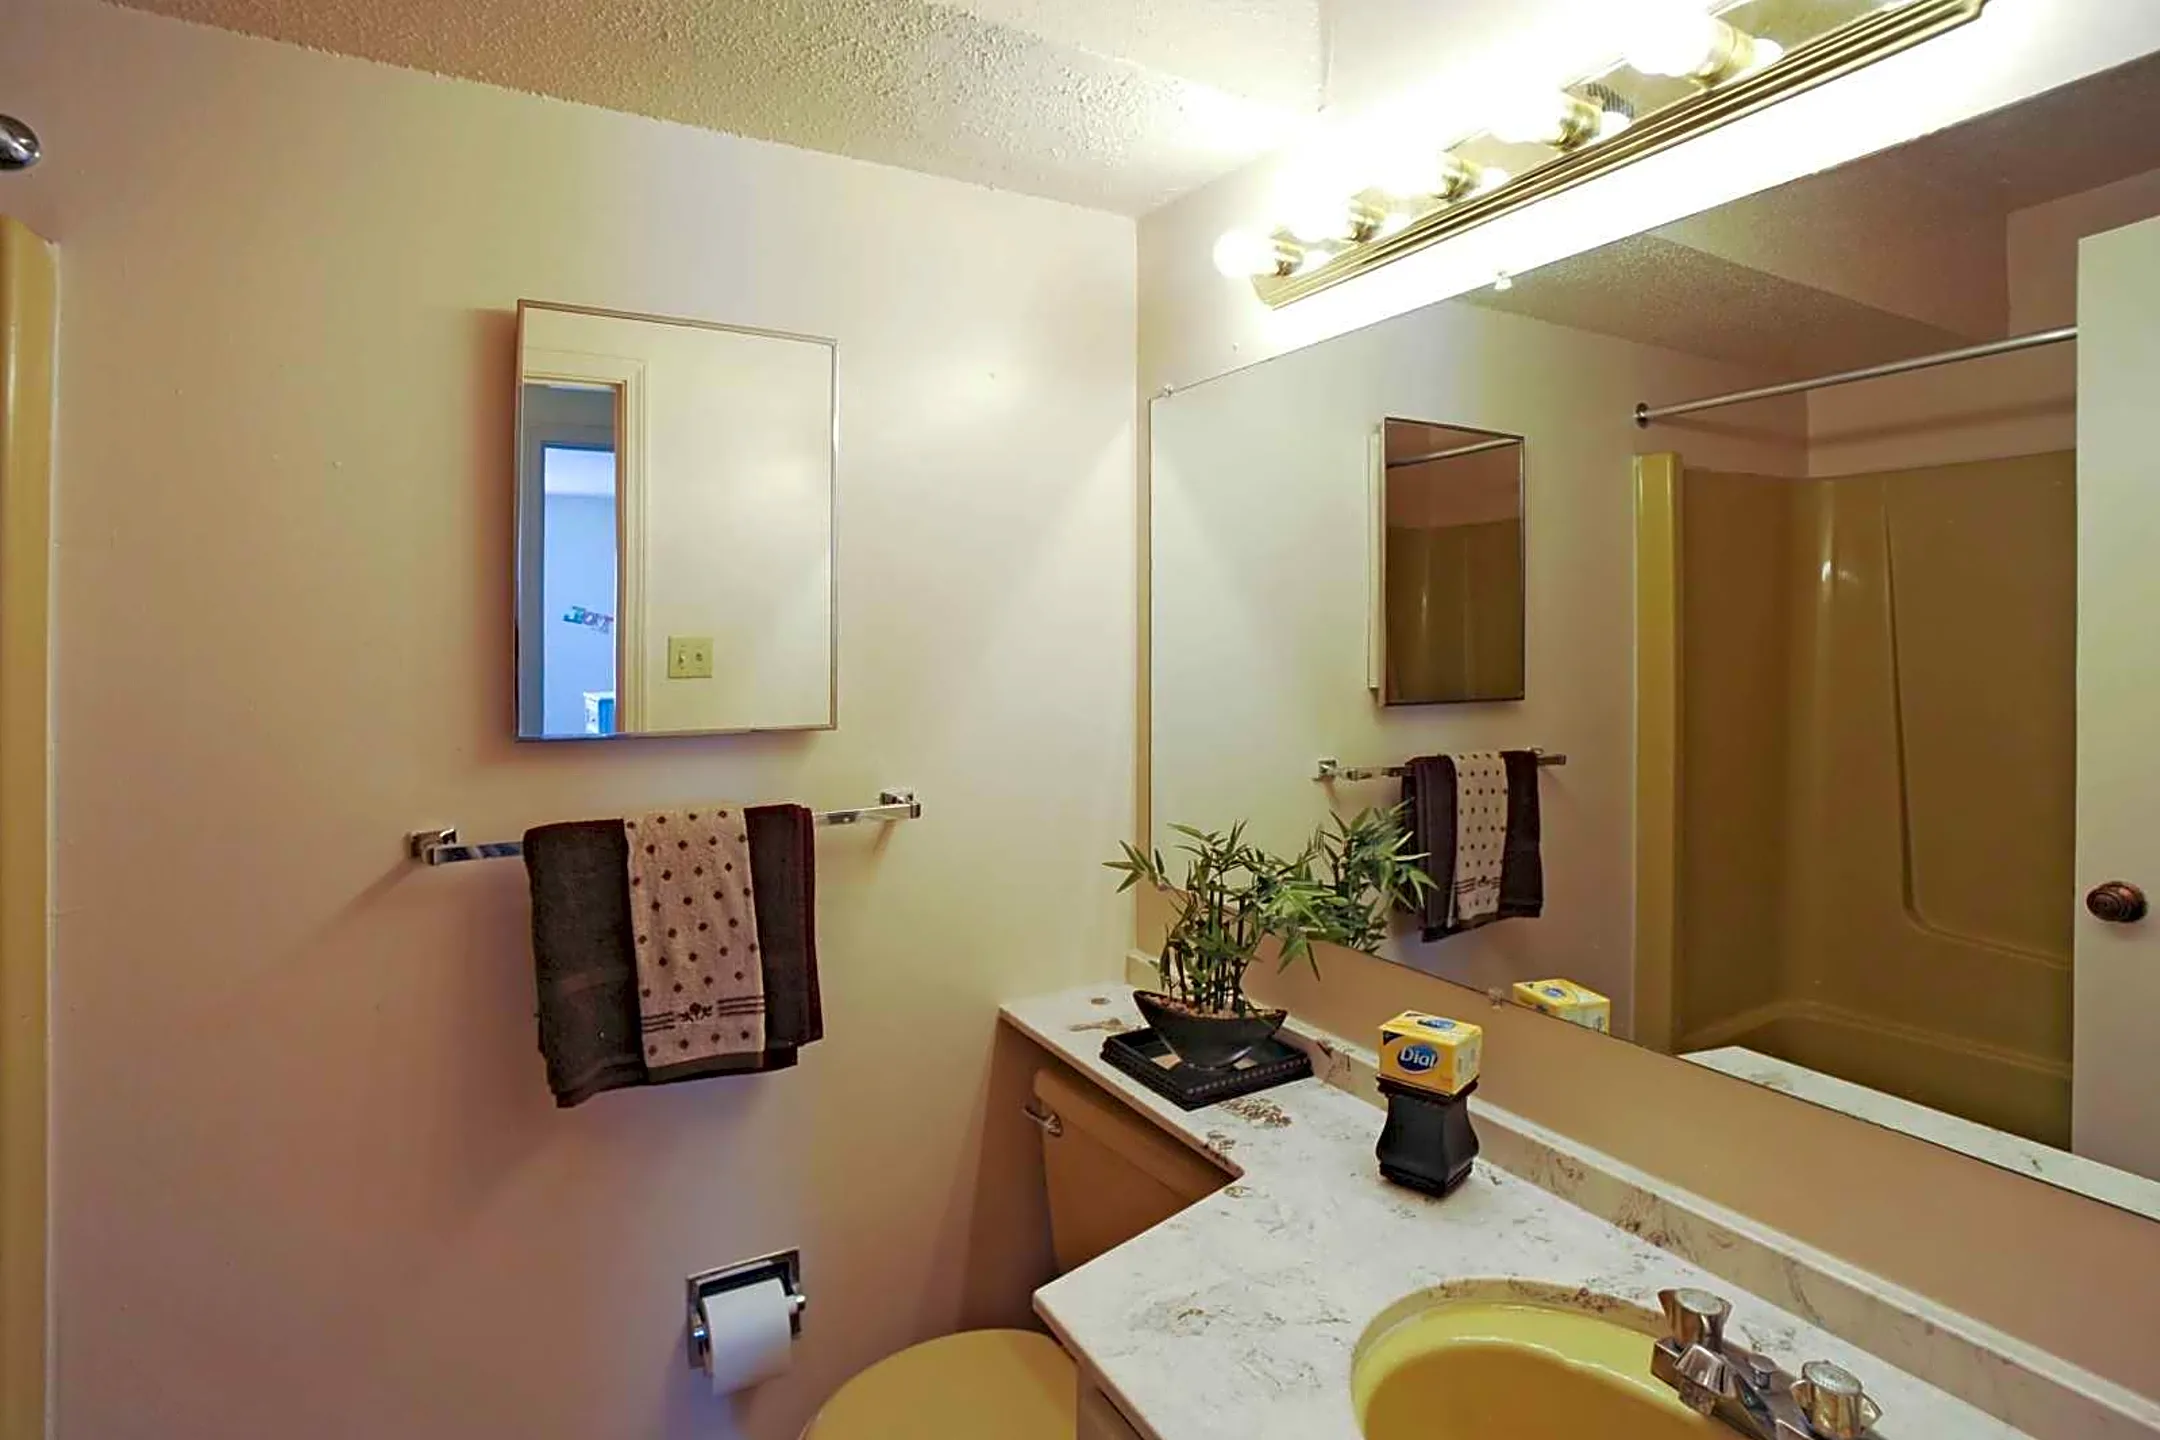 Bathroom - Fox Club Apartments - Indianapolis, IN